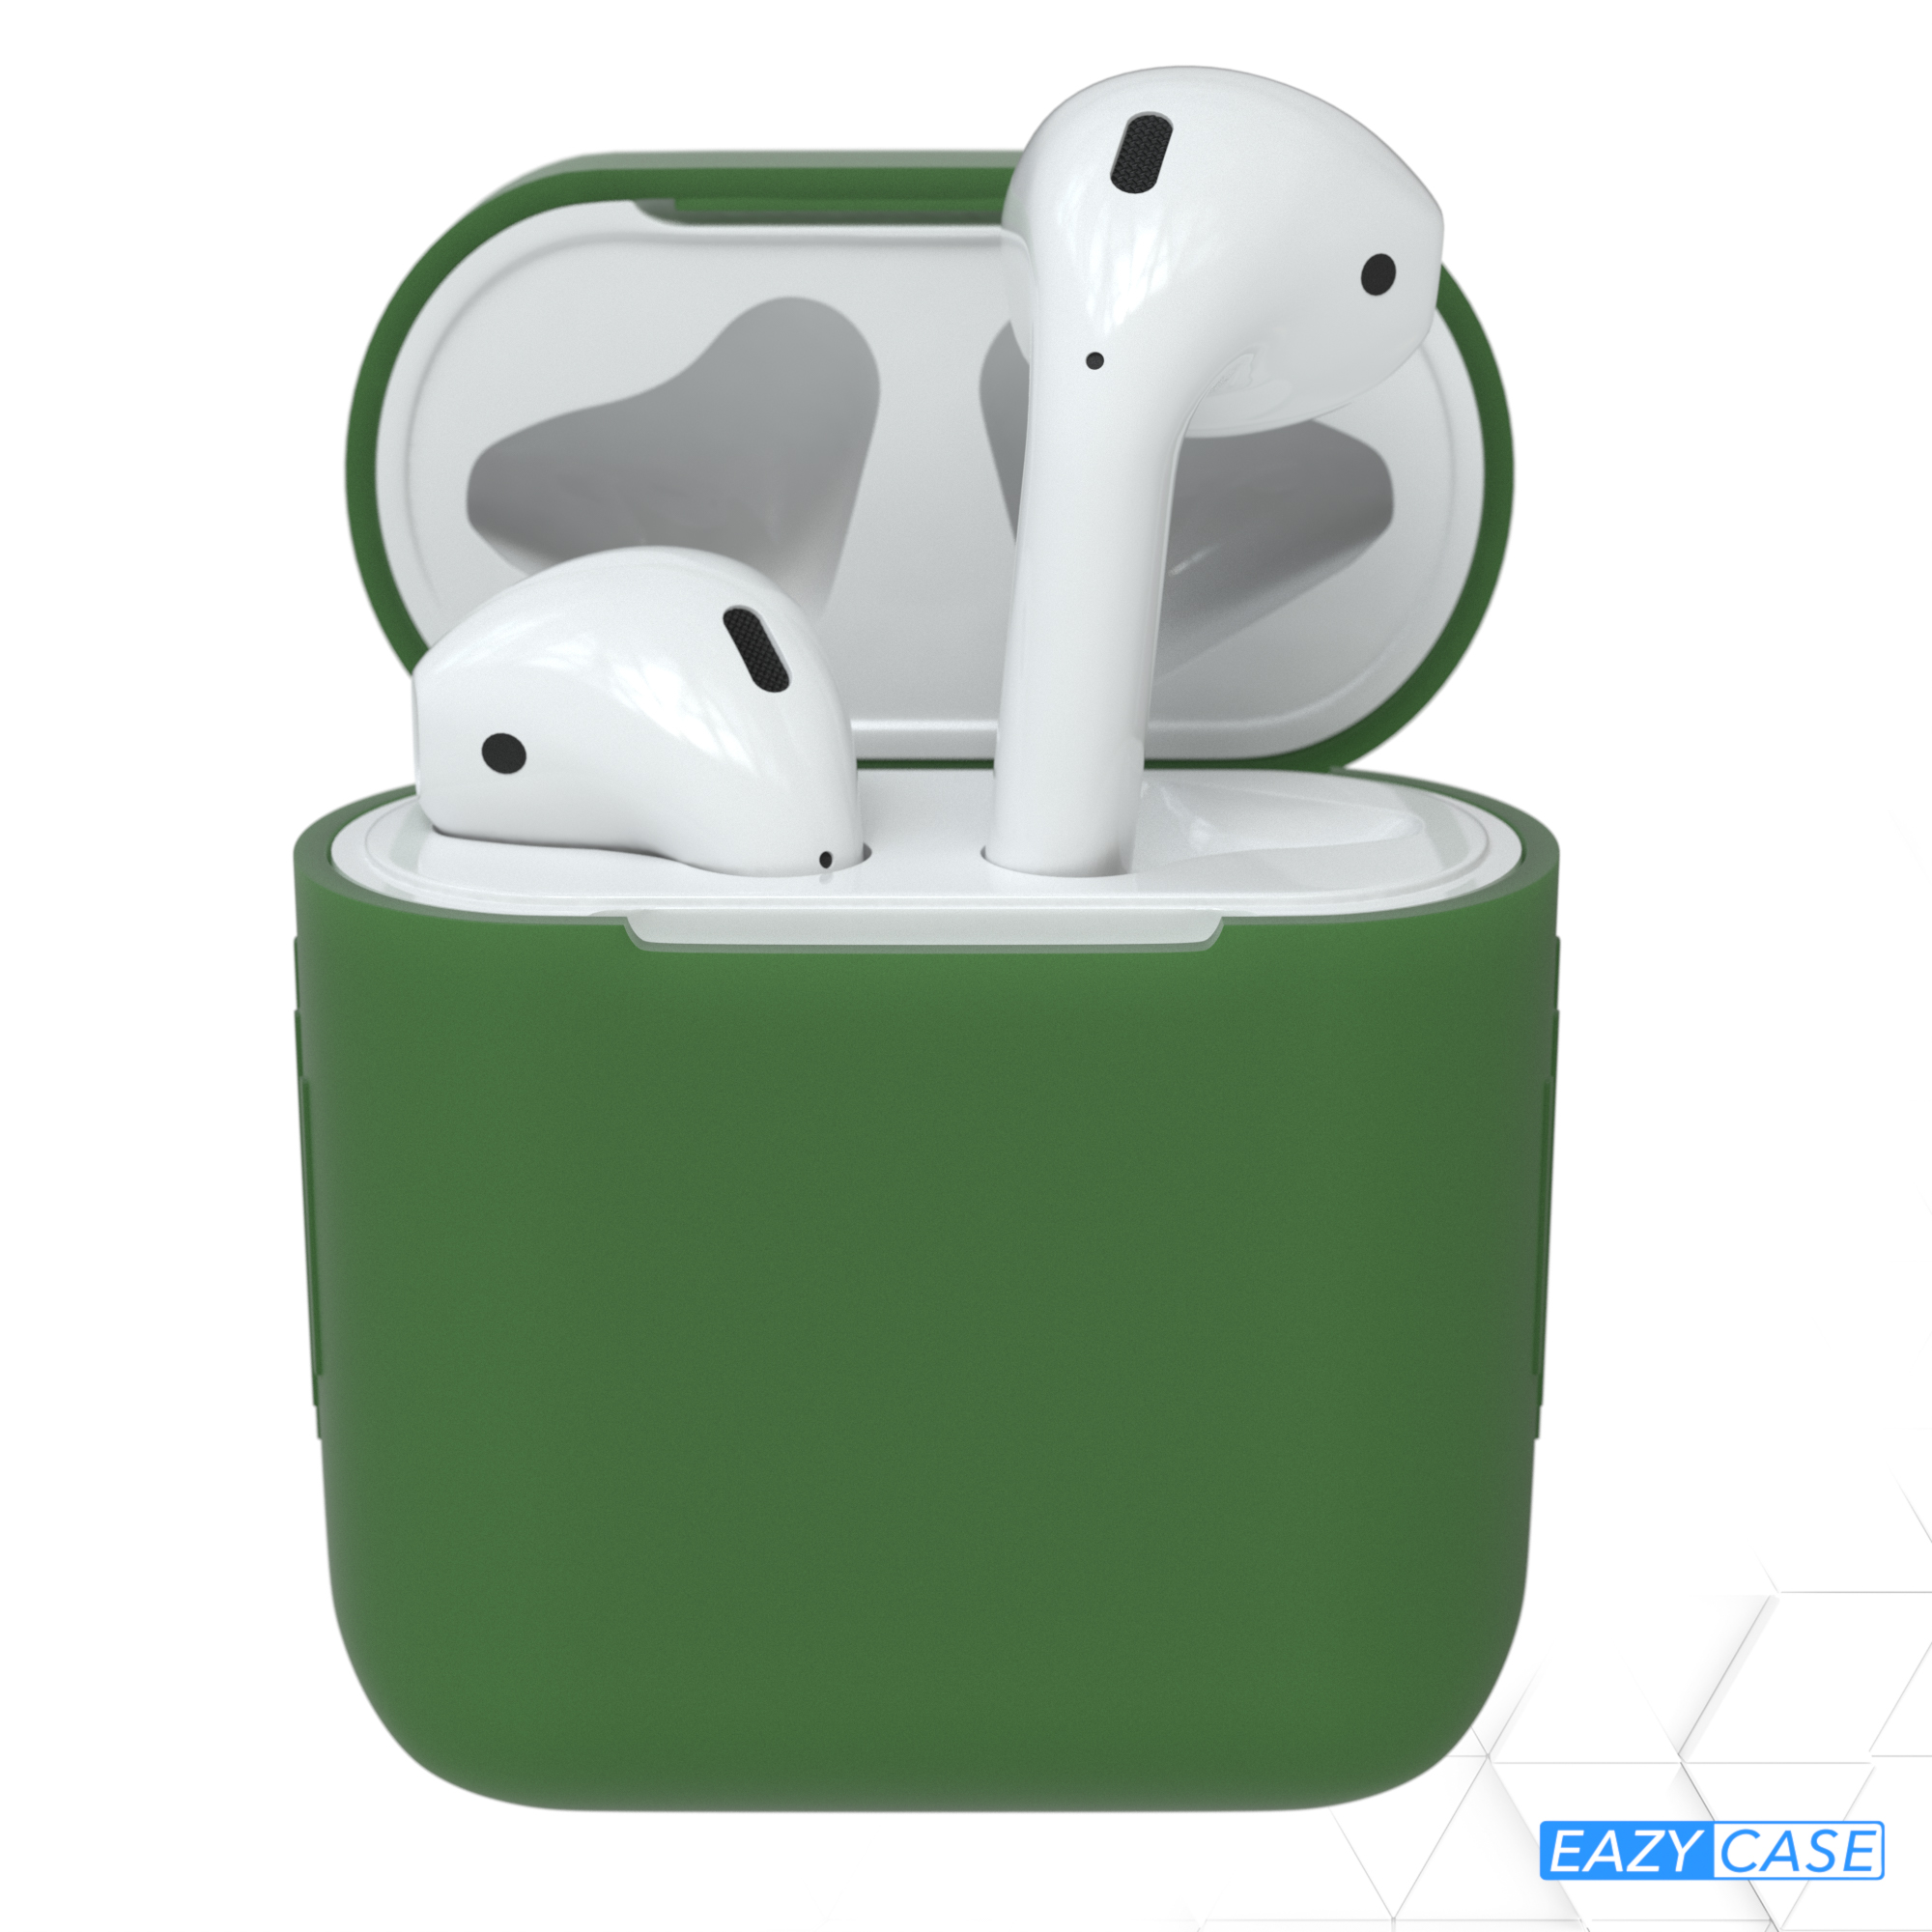 Schutzhülle Apple AirPods EAZY passend Grün CASE Case Sleeve Silikon für: